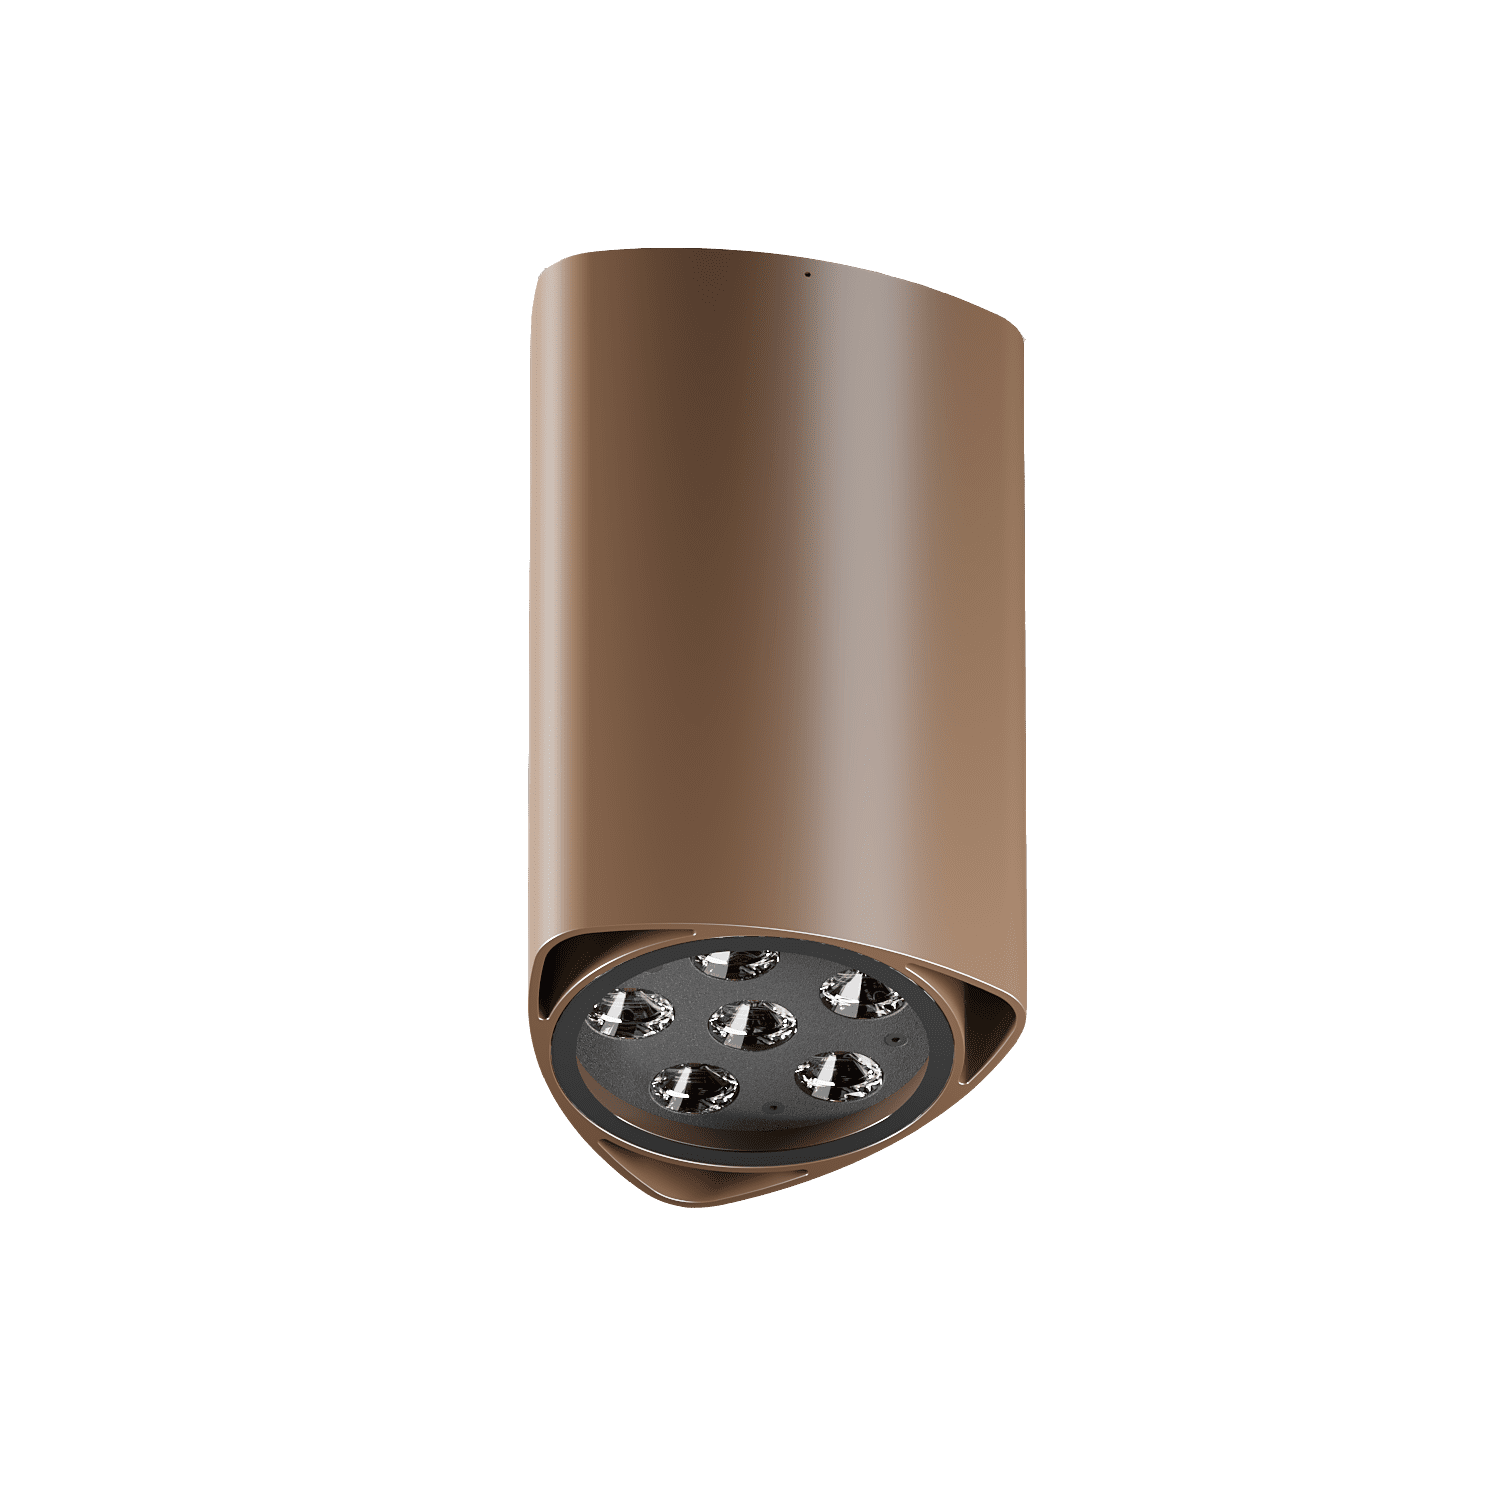 Светильник TETRA TOP - архитектурно-художественное освещение